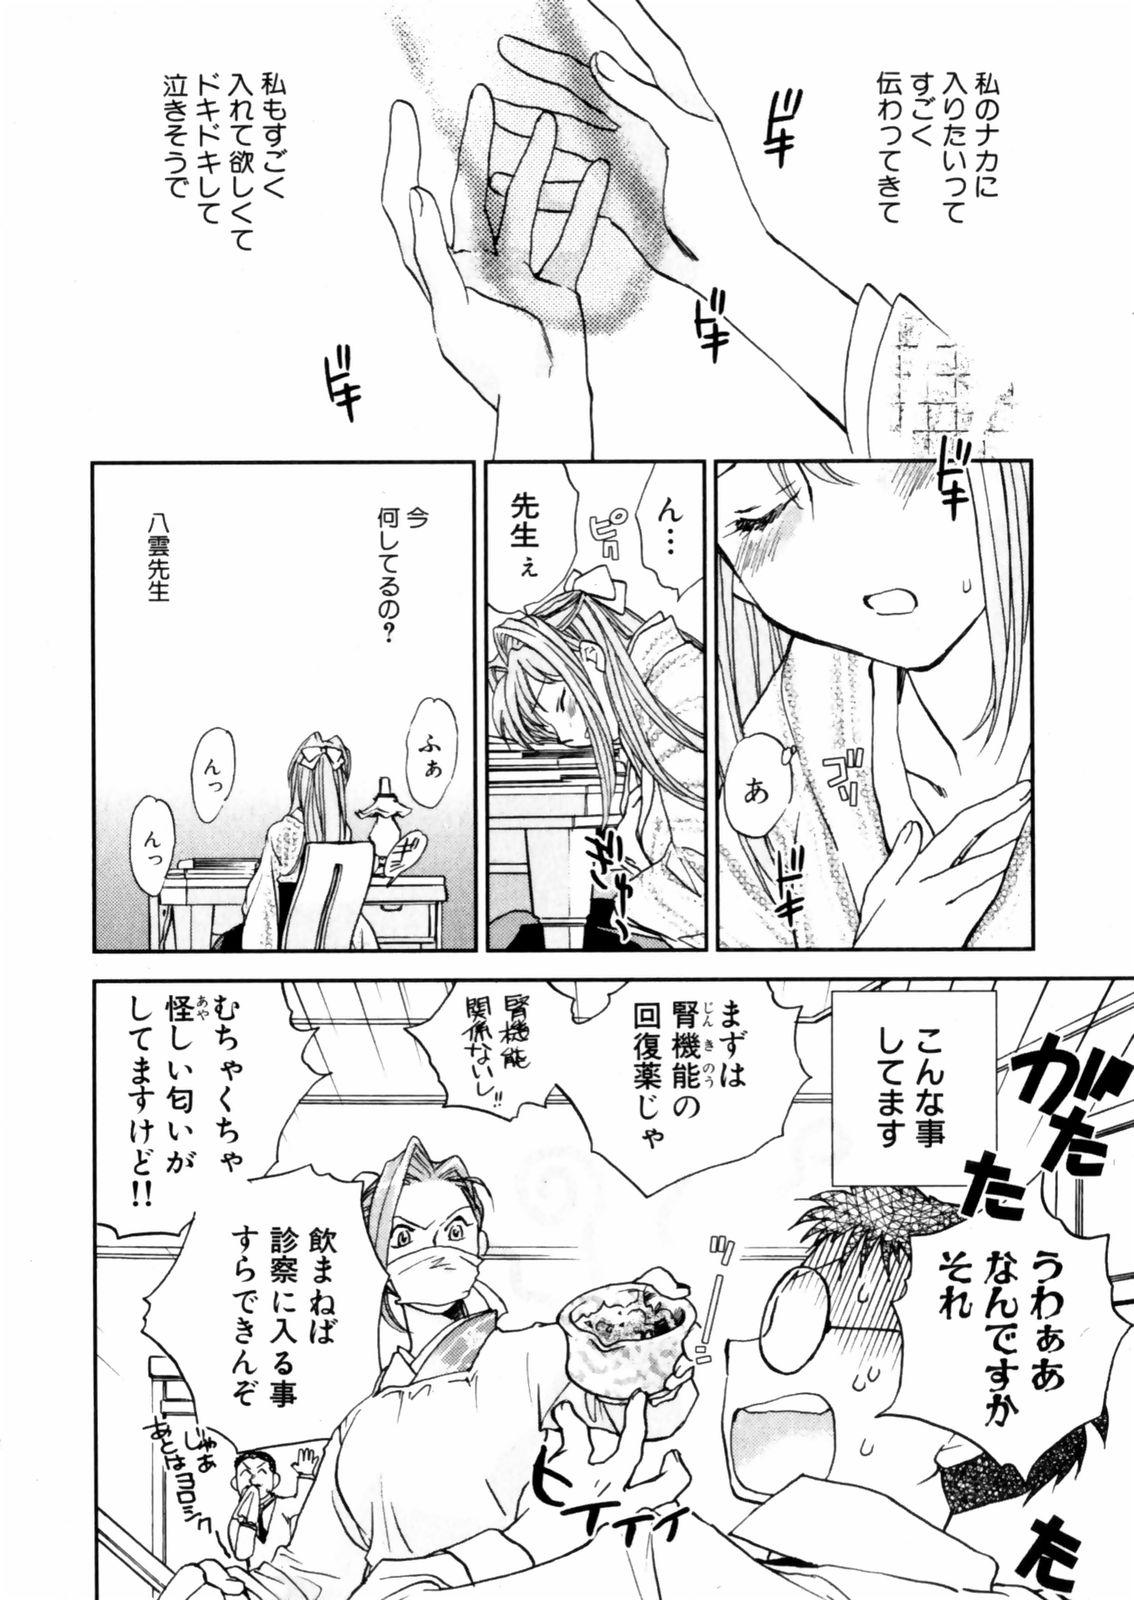 [Okano Ahiru] Hanasake ! Otome Juku (Otome Private Tutoring School) Vol.2 27